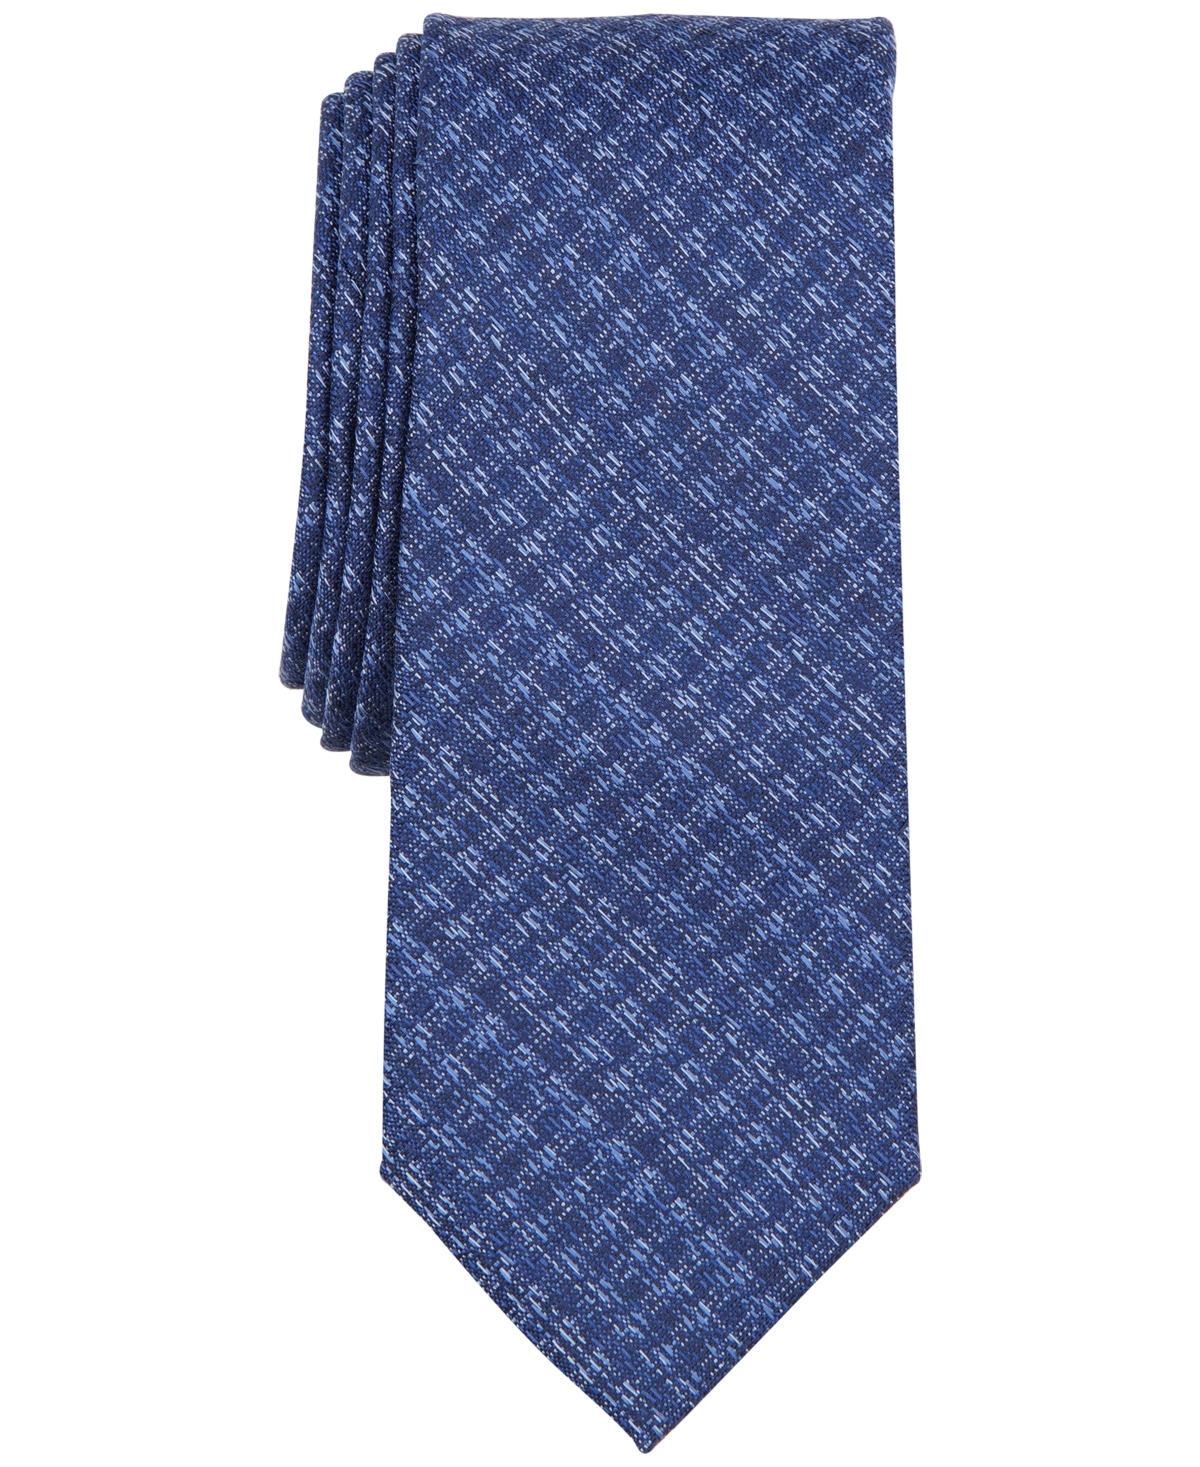 Men's Milan Solid Textured Tie, Created for Macy's - Navy